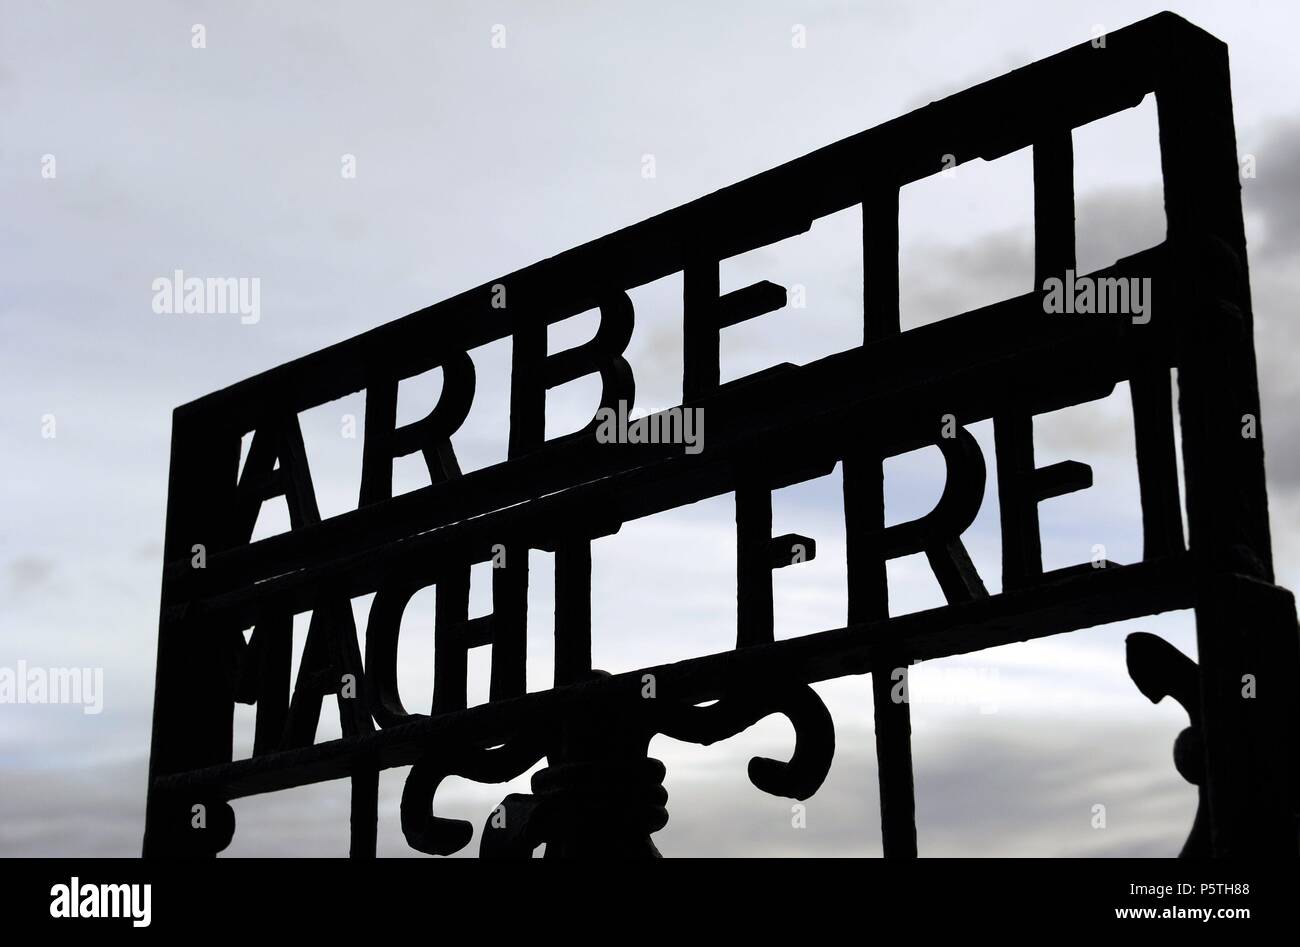 Campo di Concentramento di Dachau. Campo nazista di prigionieri aperto nel 1933. Dettaglio di slogan Arbeit macht frei (lavoro rende libero) presso la porta principale. Germania. Foto Stock